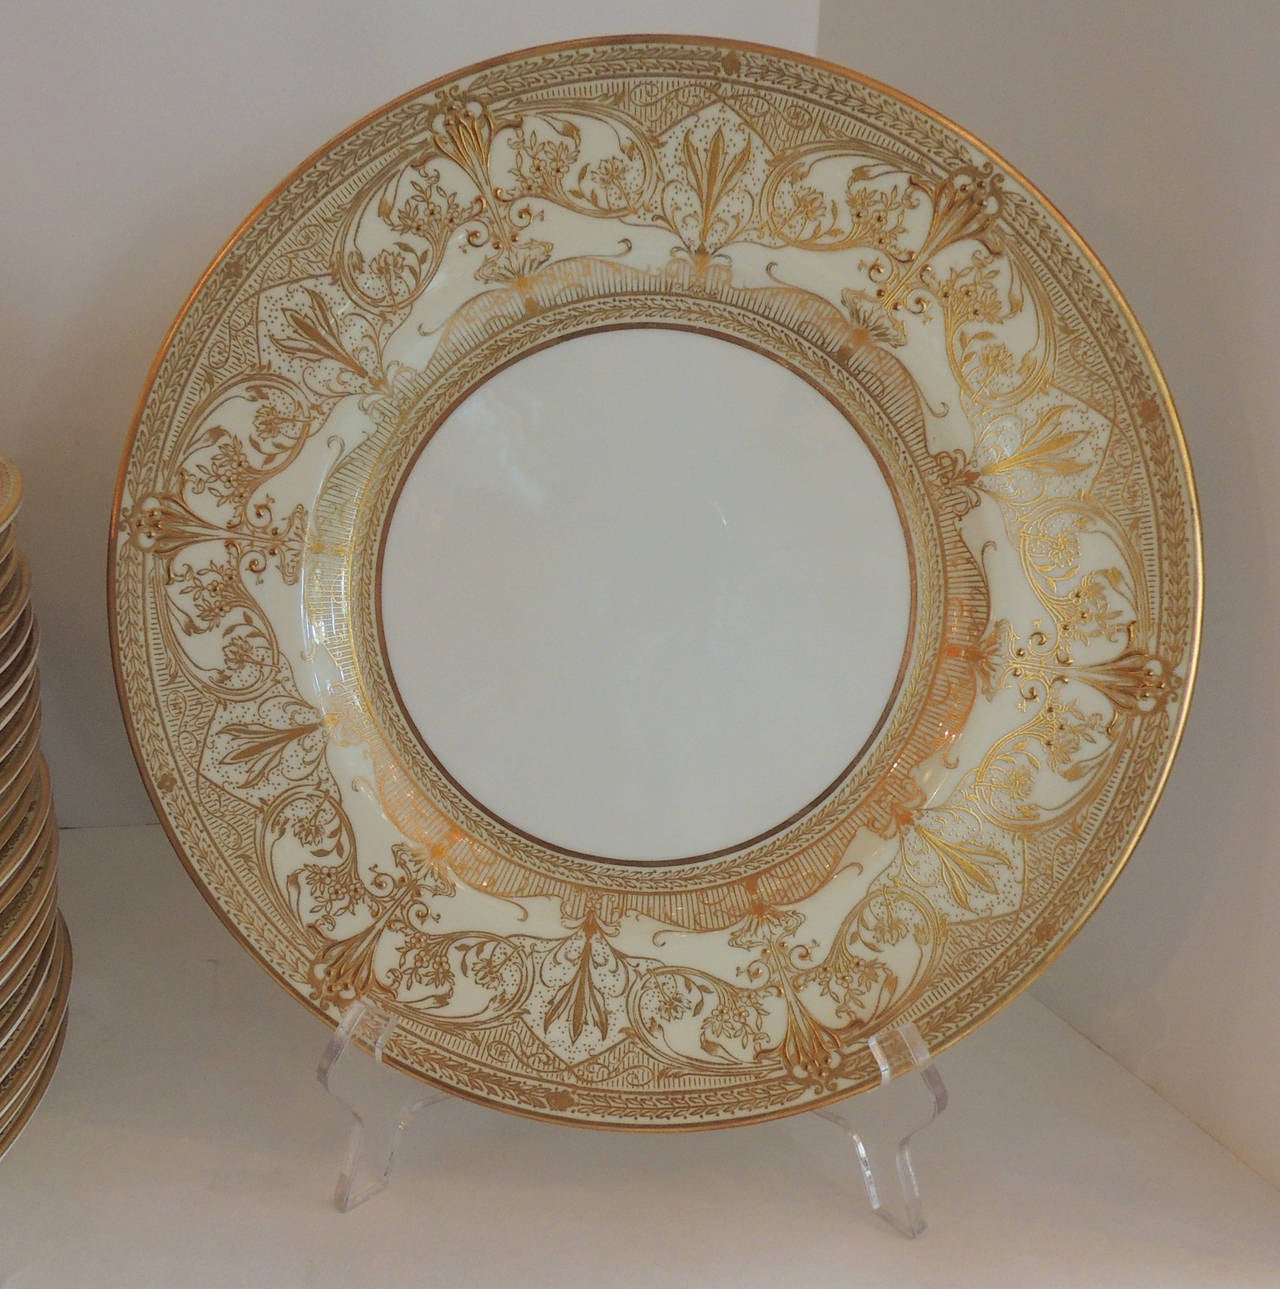 Gilt Elegant Set Of 24 Royal Worcester Gold Encrusted Ivory Dinner Service Plates